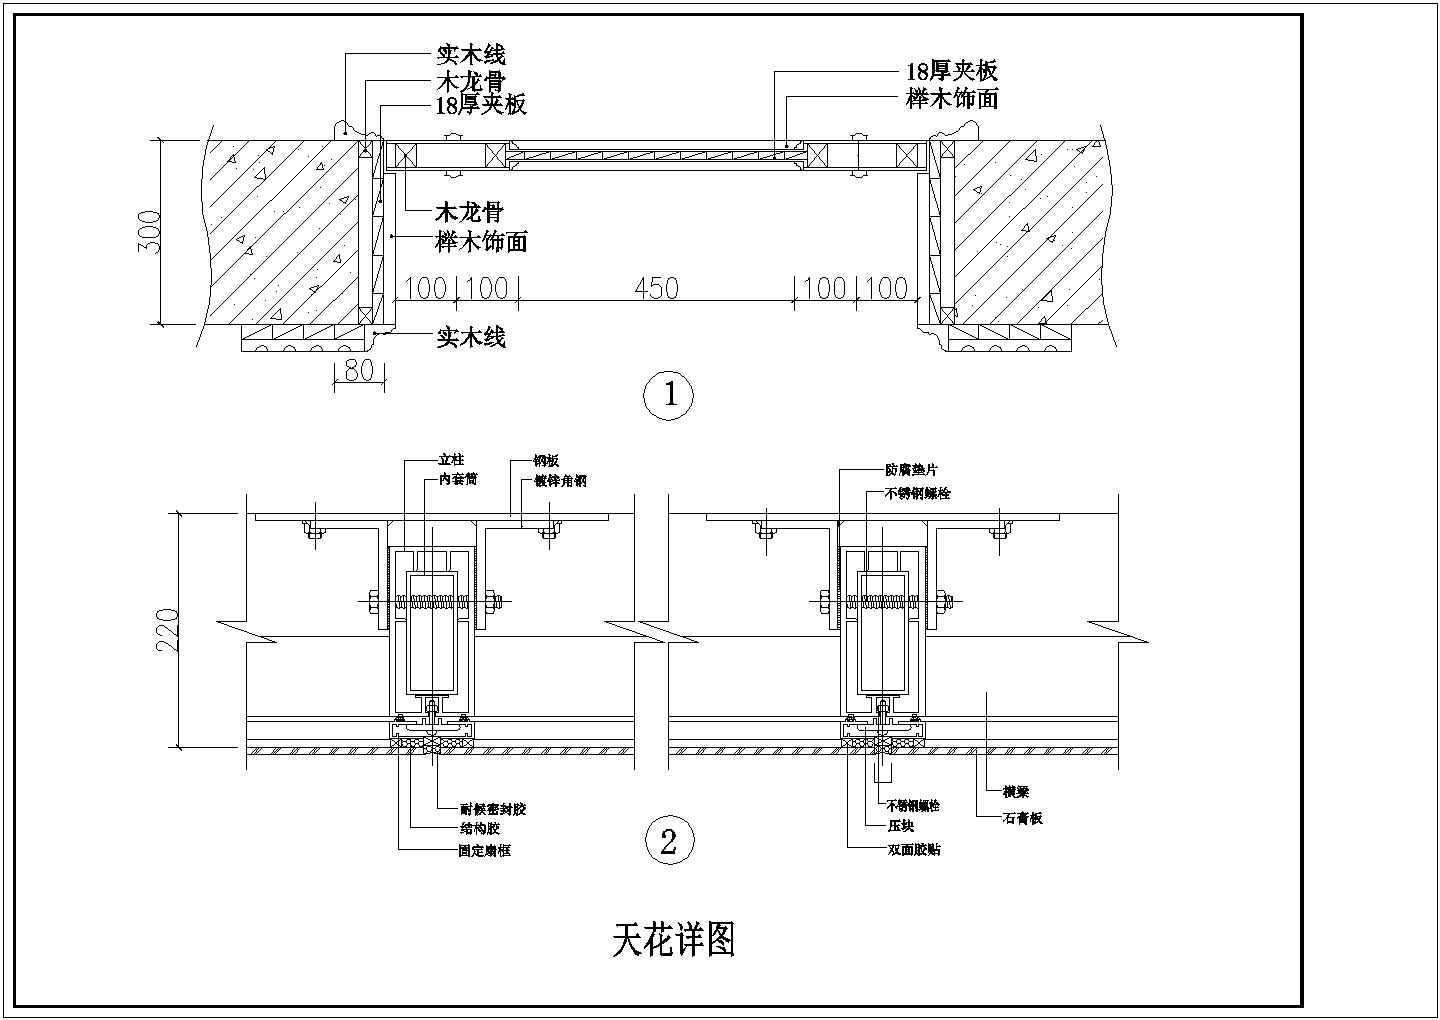 某长35.68米 宽25.52米 二层茶艺馆装修CAD室内设计平面地面天花图